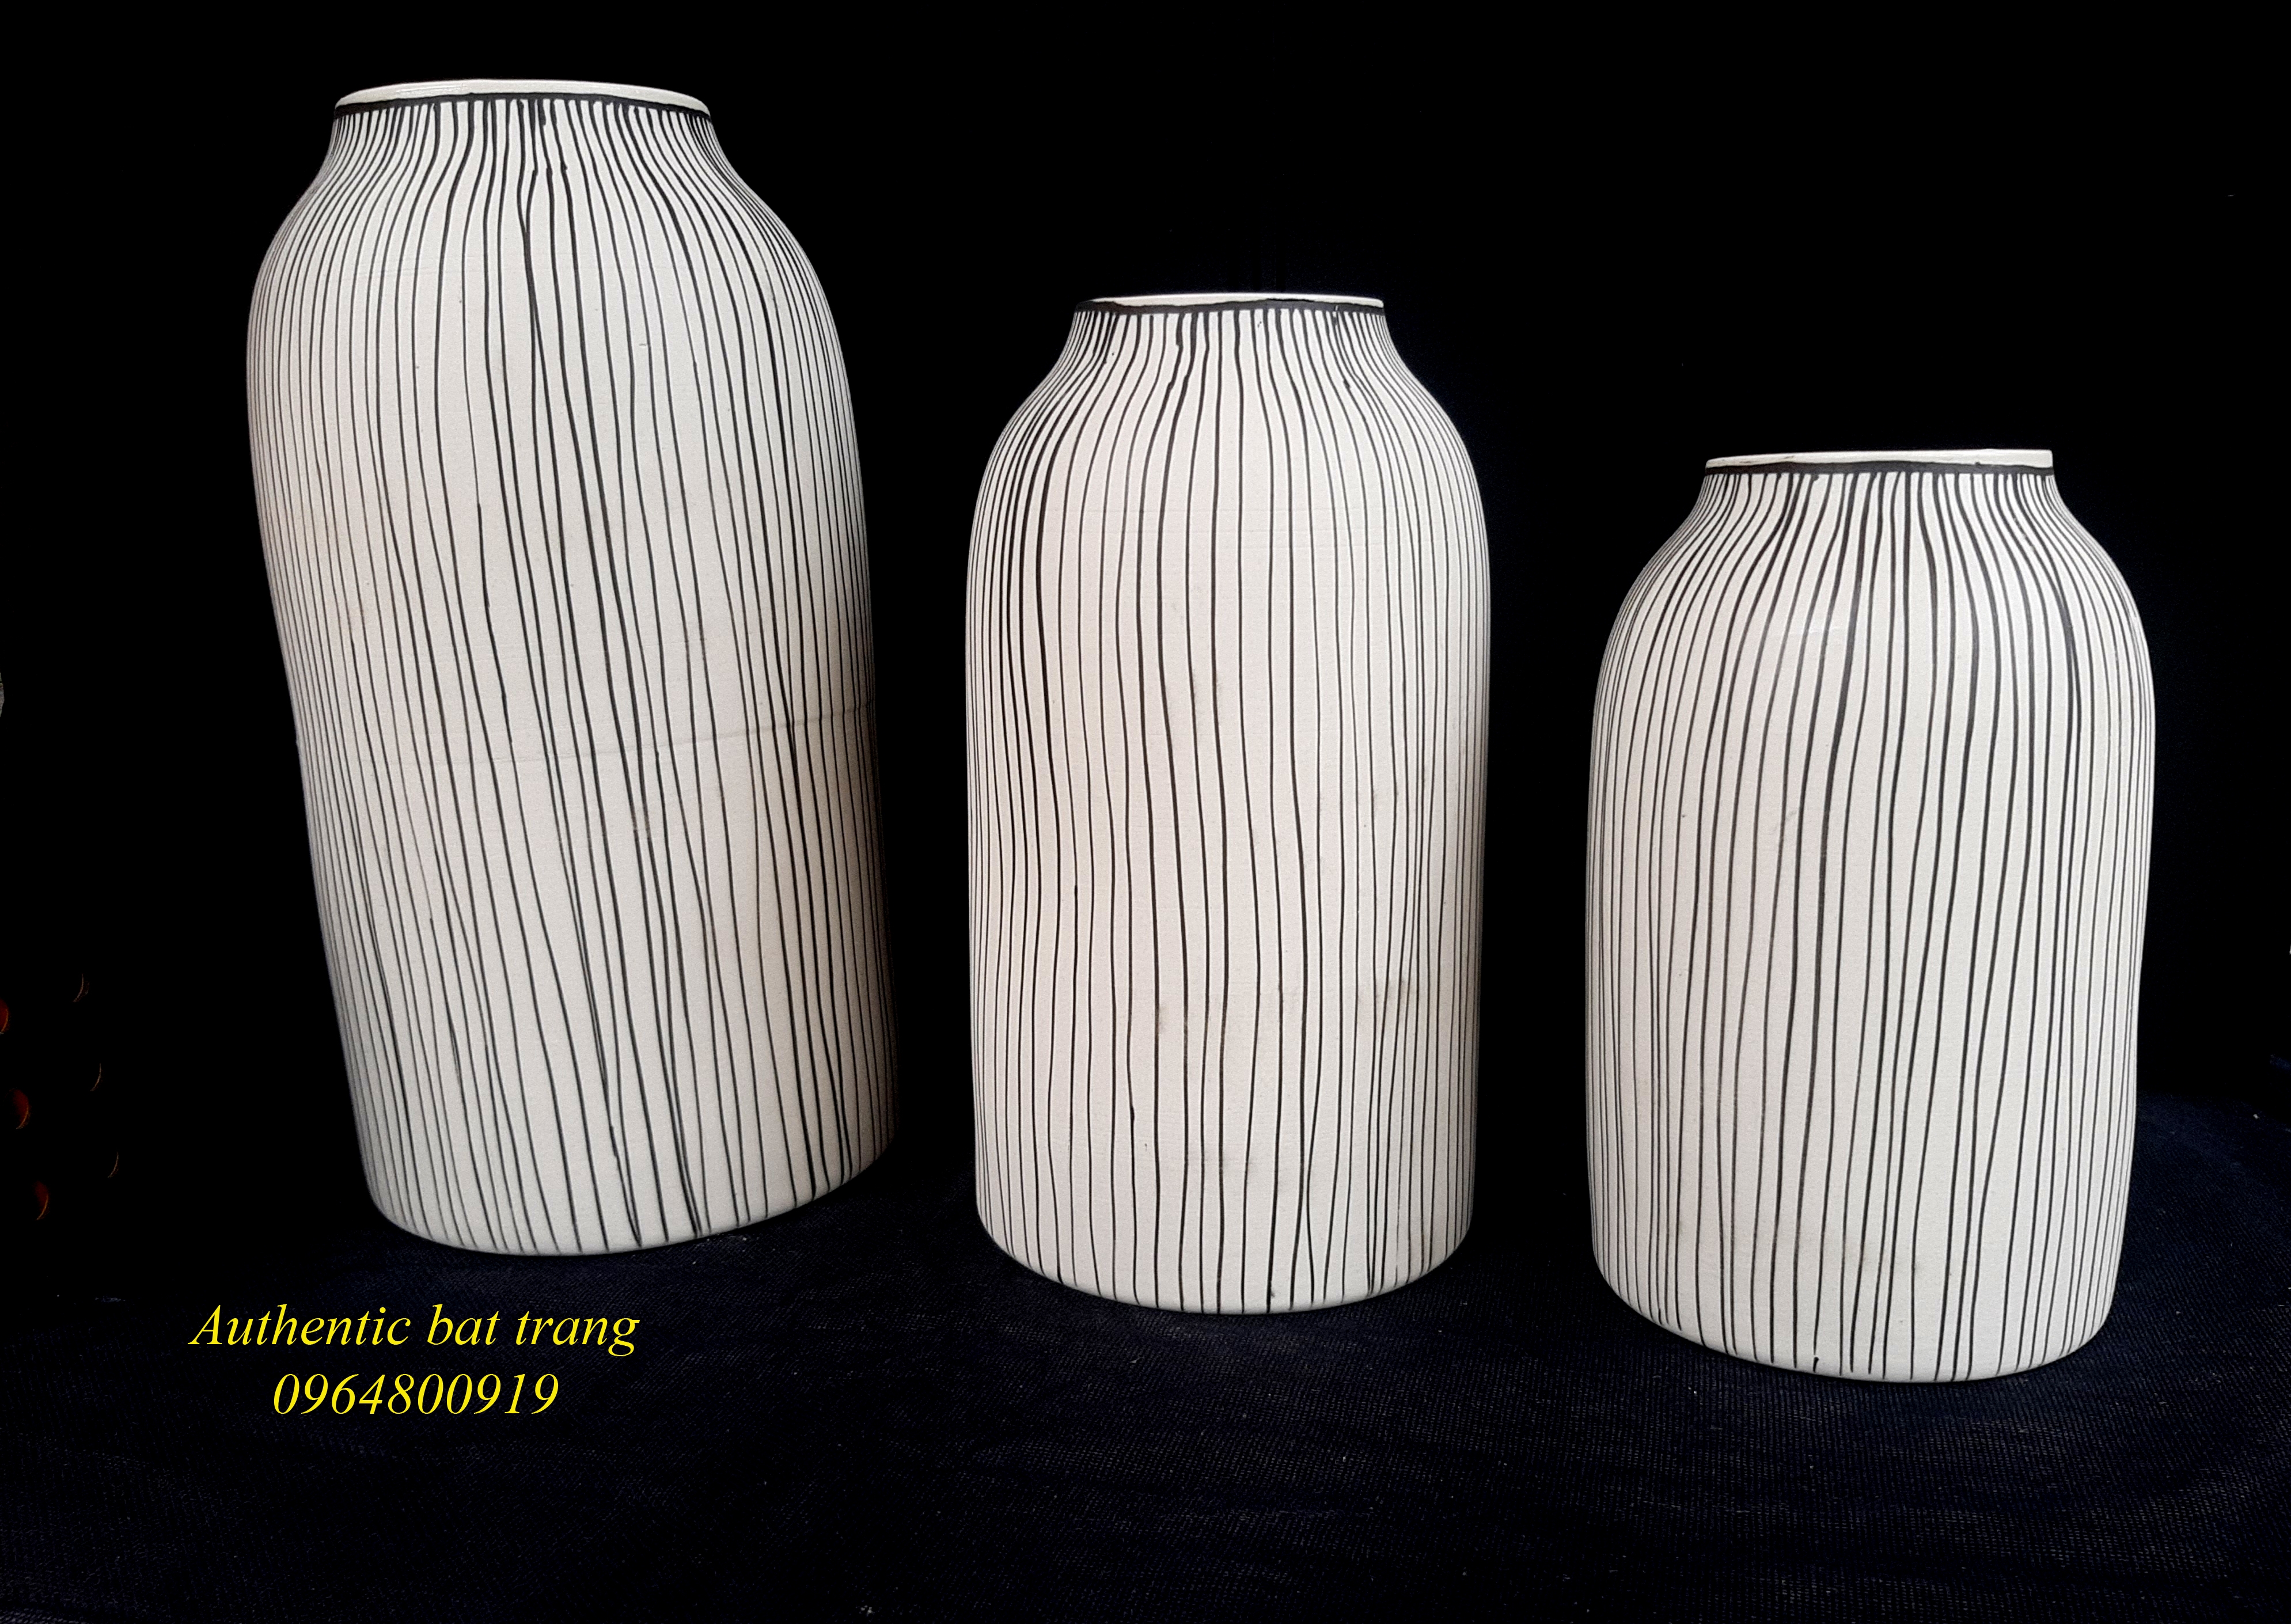 Cylinder vases set / Bộ bình trụ kẻ sọc, sản phẩm thủ công, sản xuất tại xưởng gốm sứ Authentic bat trang